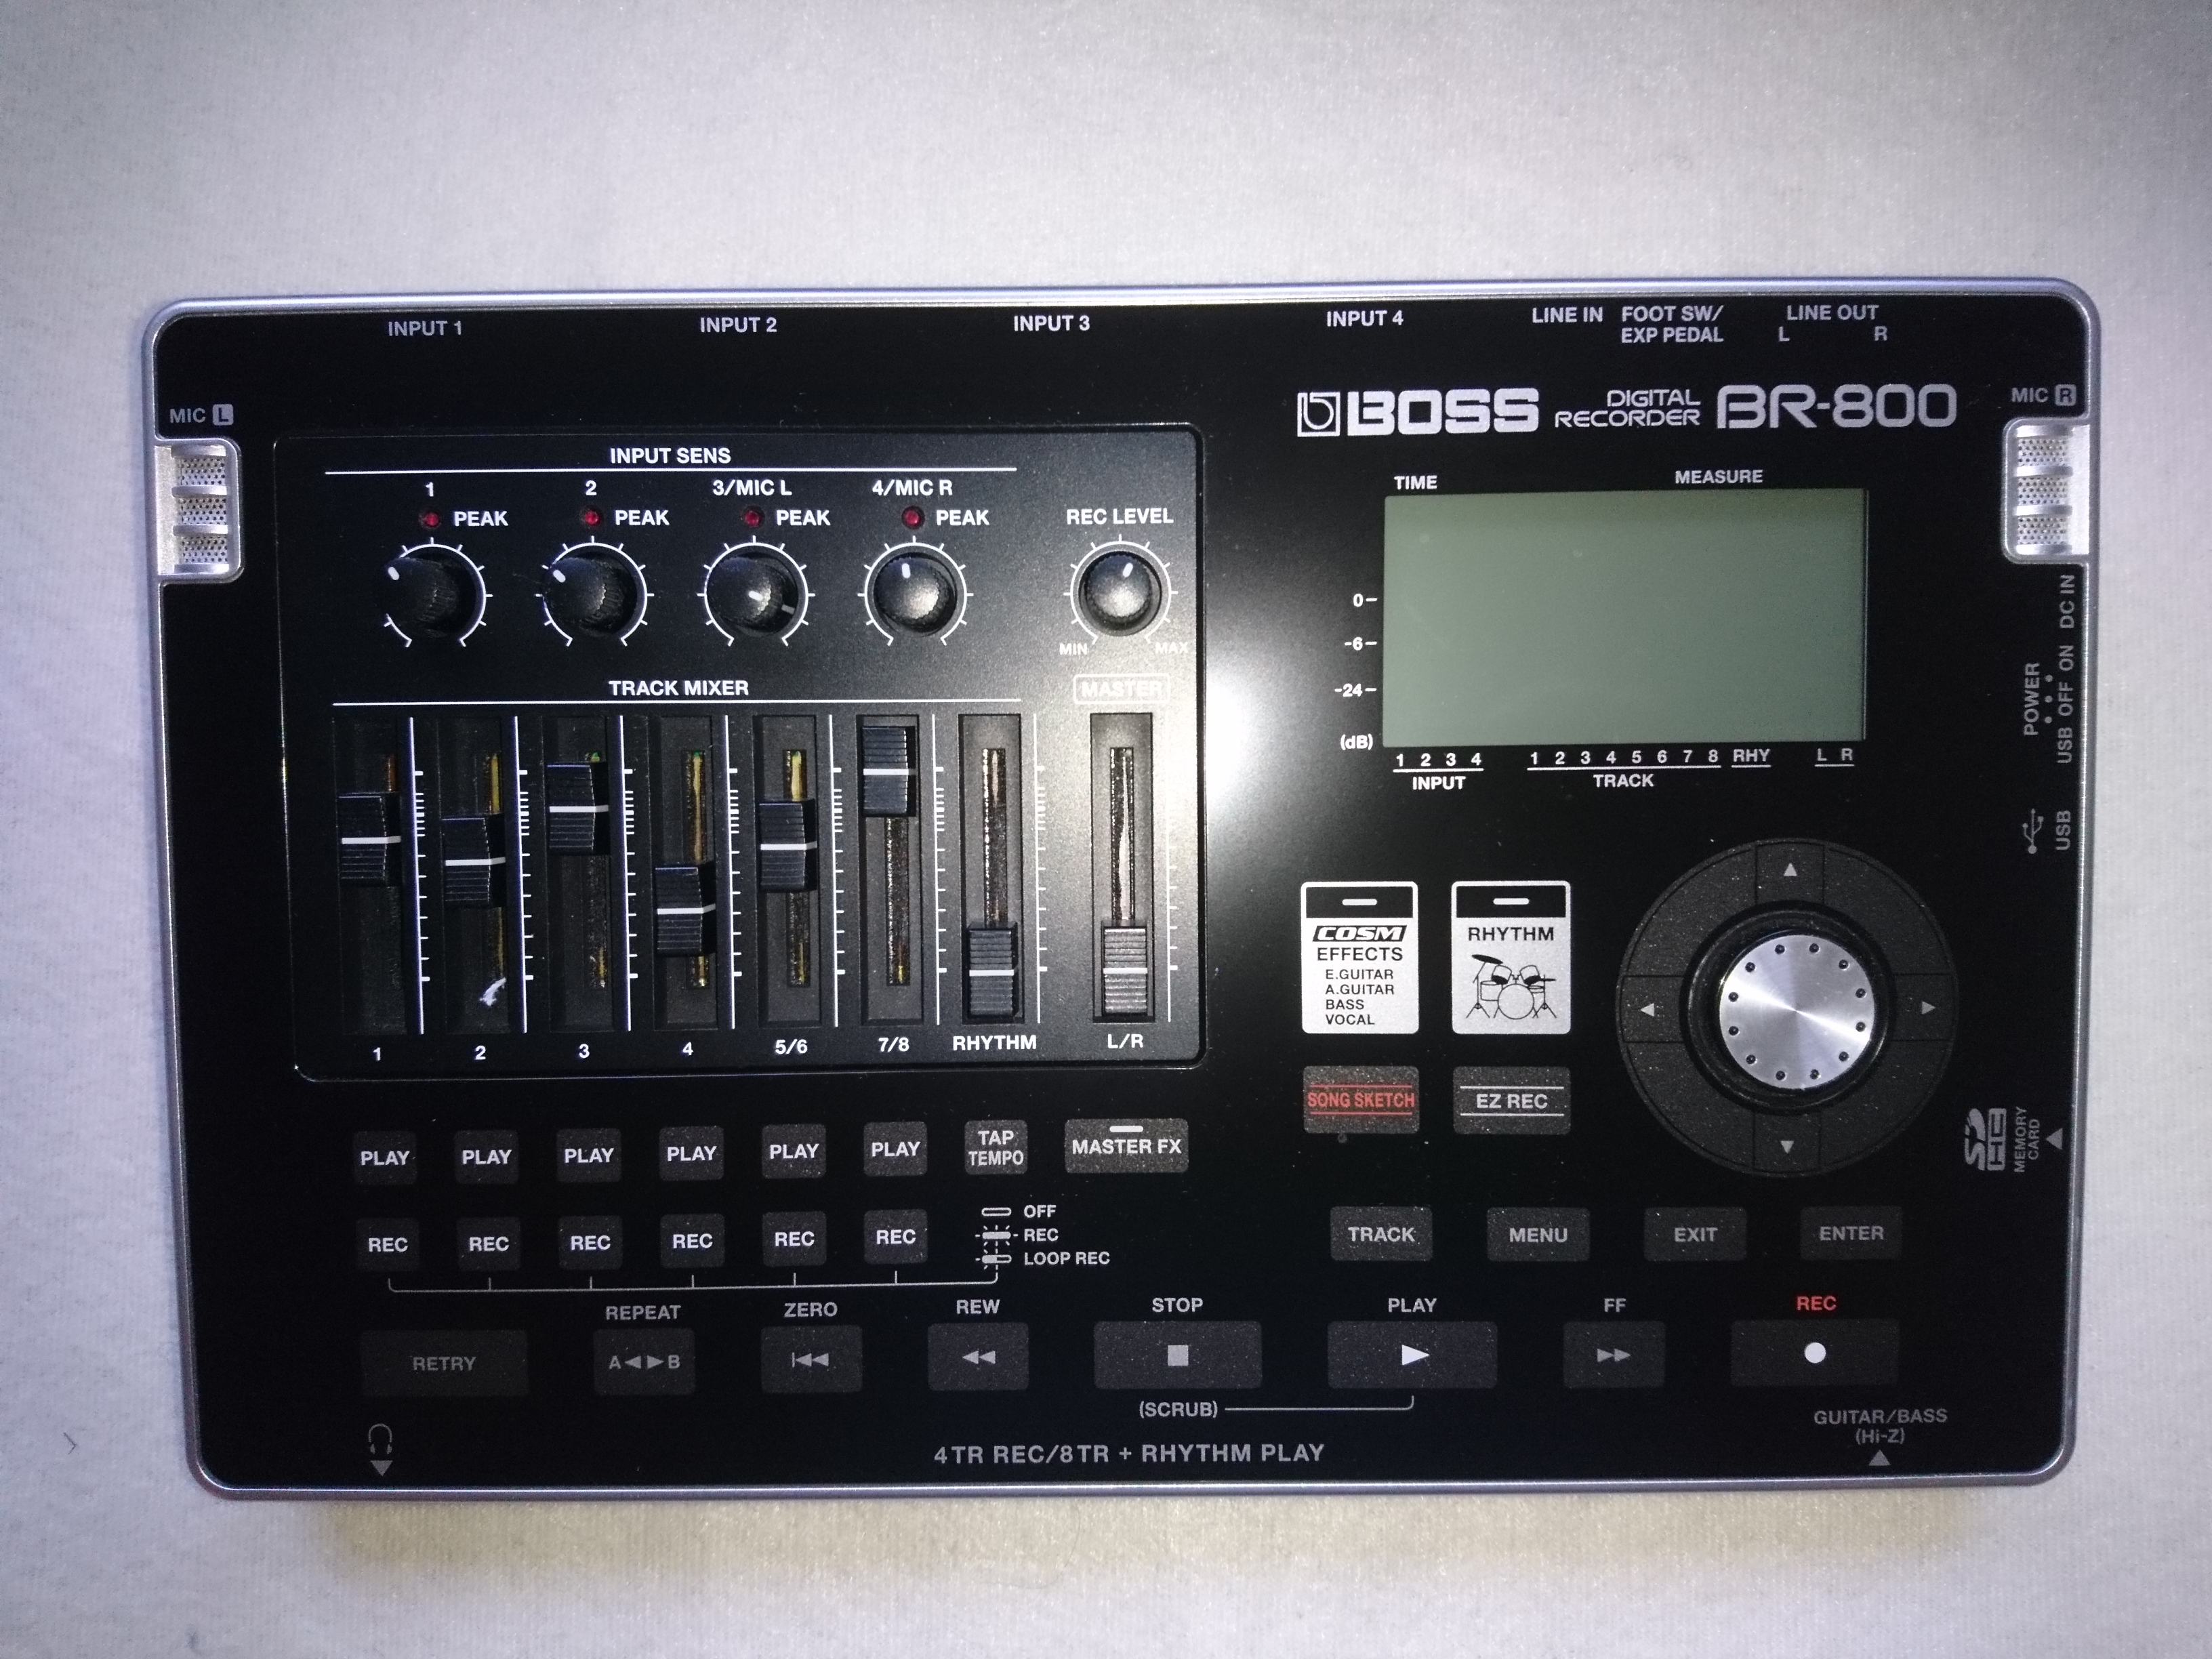 BR-800 DIGITAL RECORDER - Boss BR-800 Digital Recorder - Audiofanzine